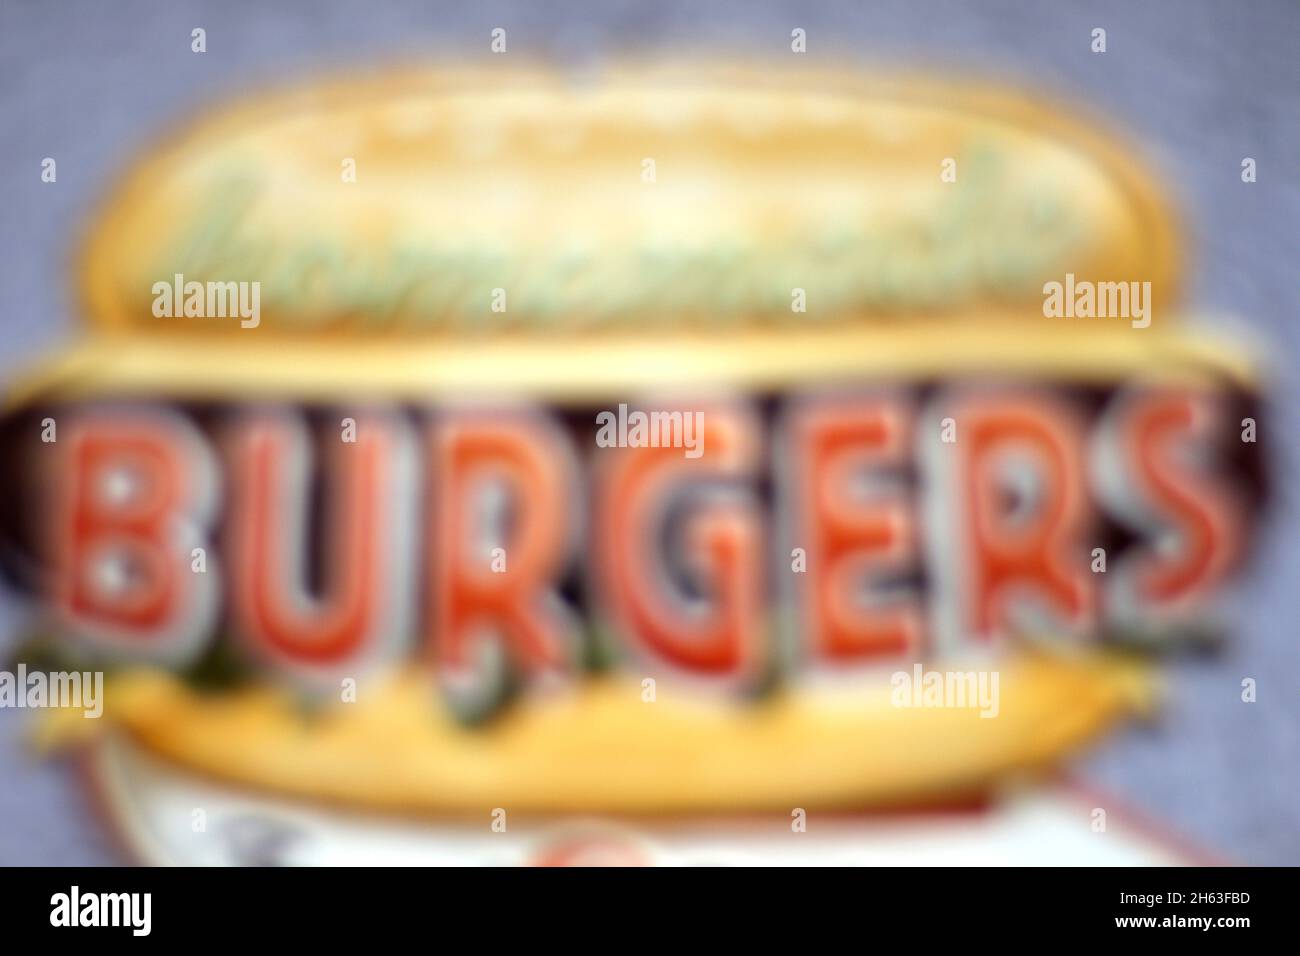 insegna pubblicitaria smaltata di un hamburger fatto in casa. Foto Stock